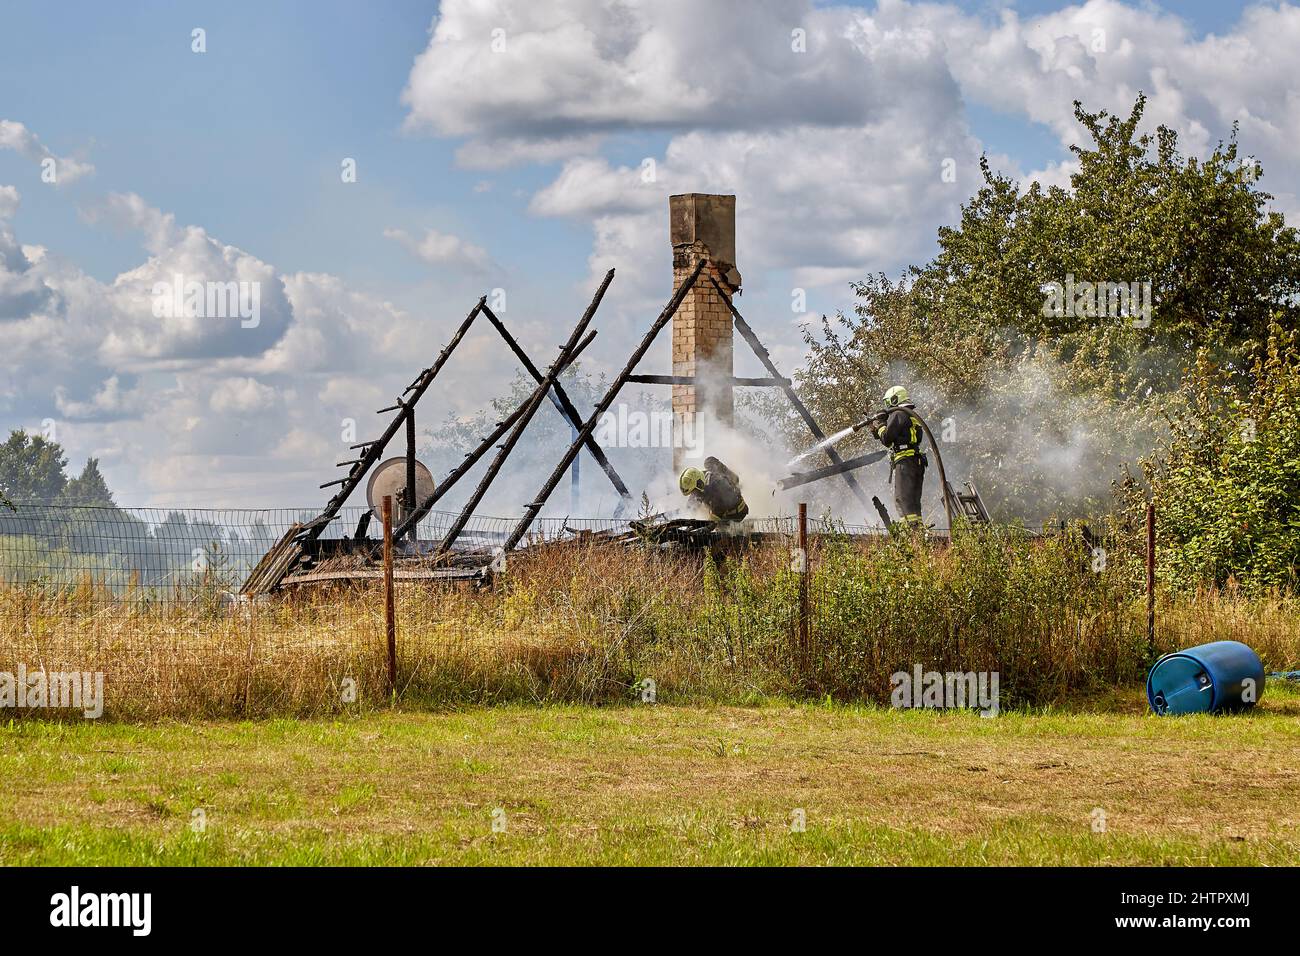 July 23, 2021, Dole island, Latvia: extinguishing the fire destroyed the village house Stock Photo